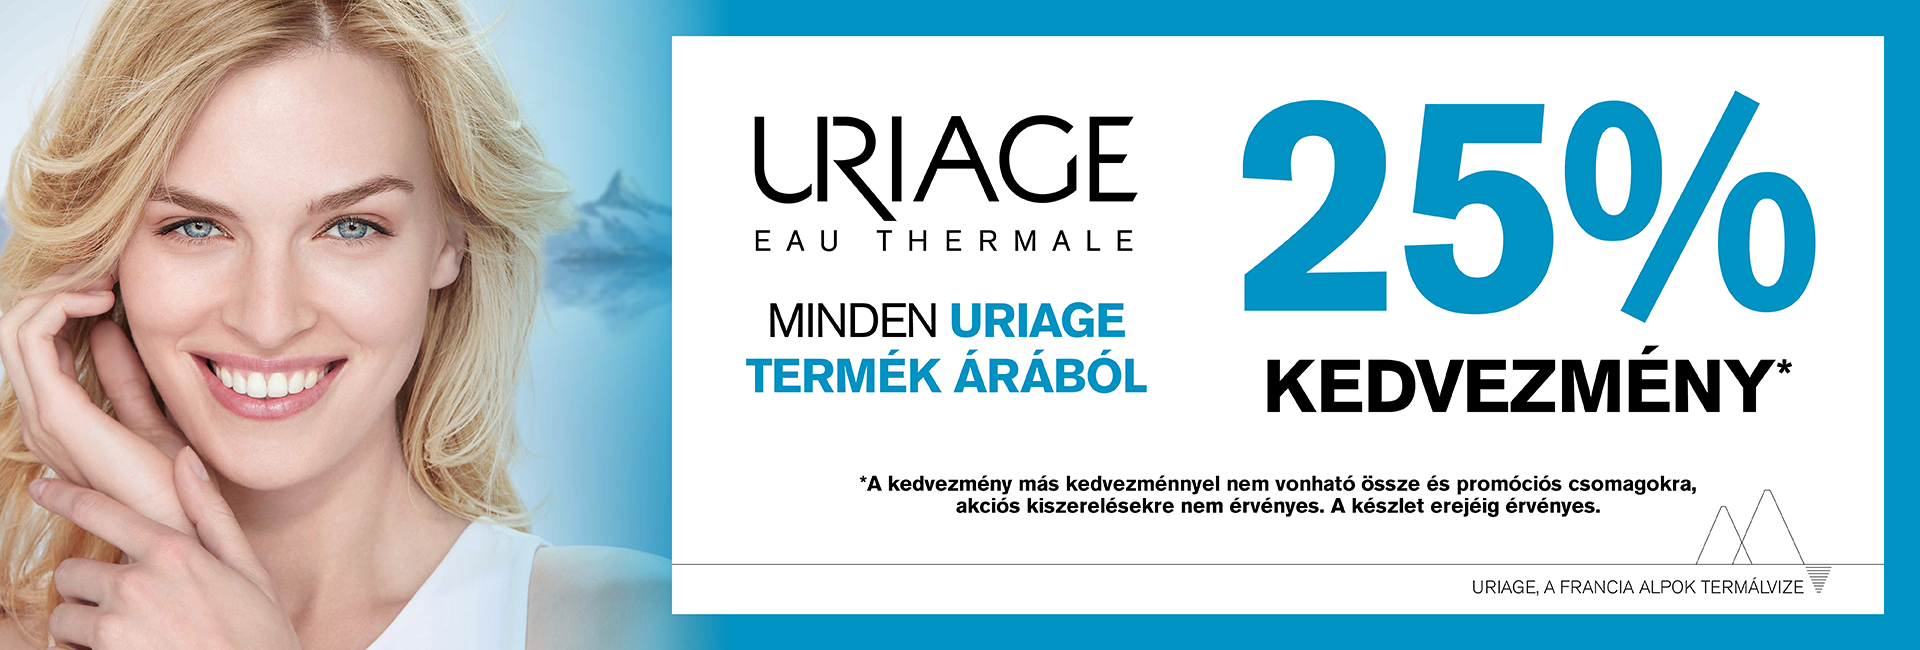 2020. április 3-20. között minden Uriage termék 25%-os kedvezménnyel kapható! 